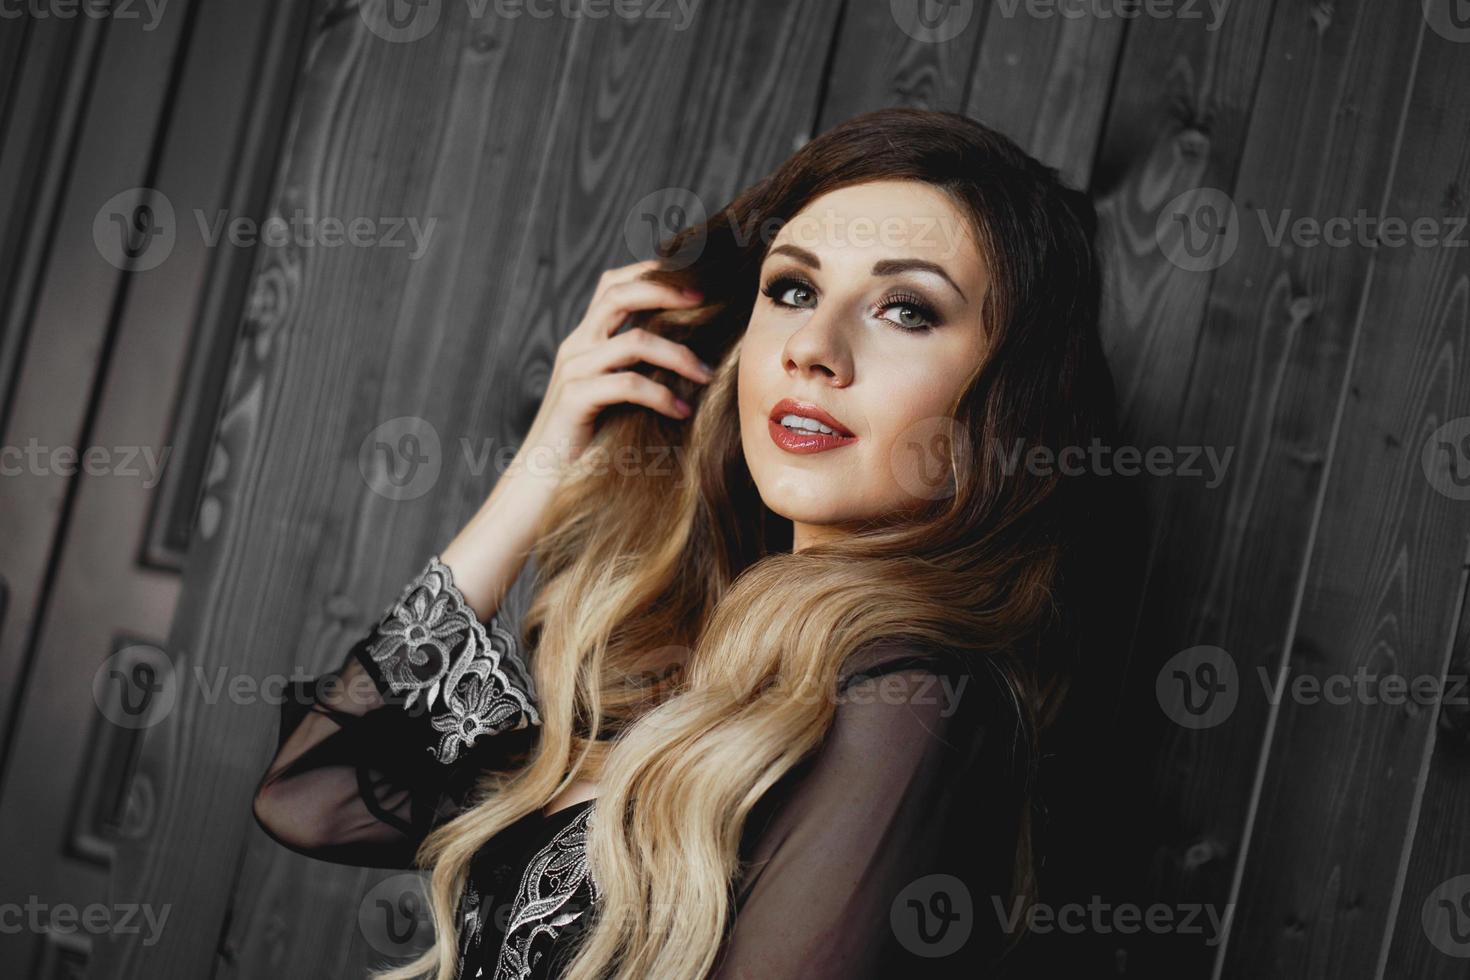 Mujer bonita joven, vestida con una bata negra transparente en una habitación oscura foto